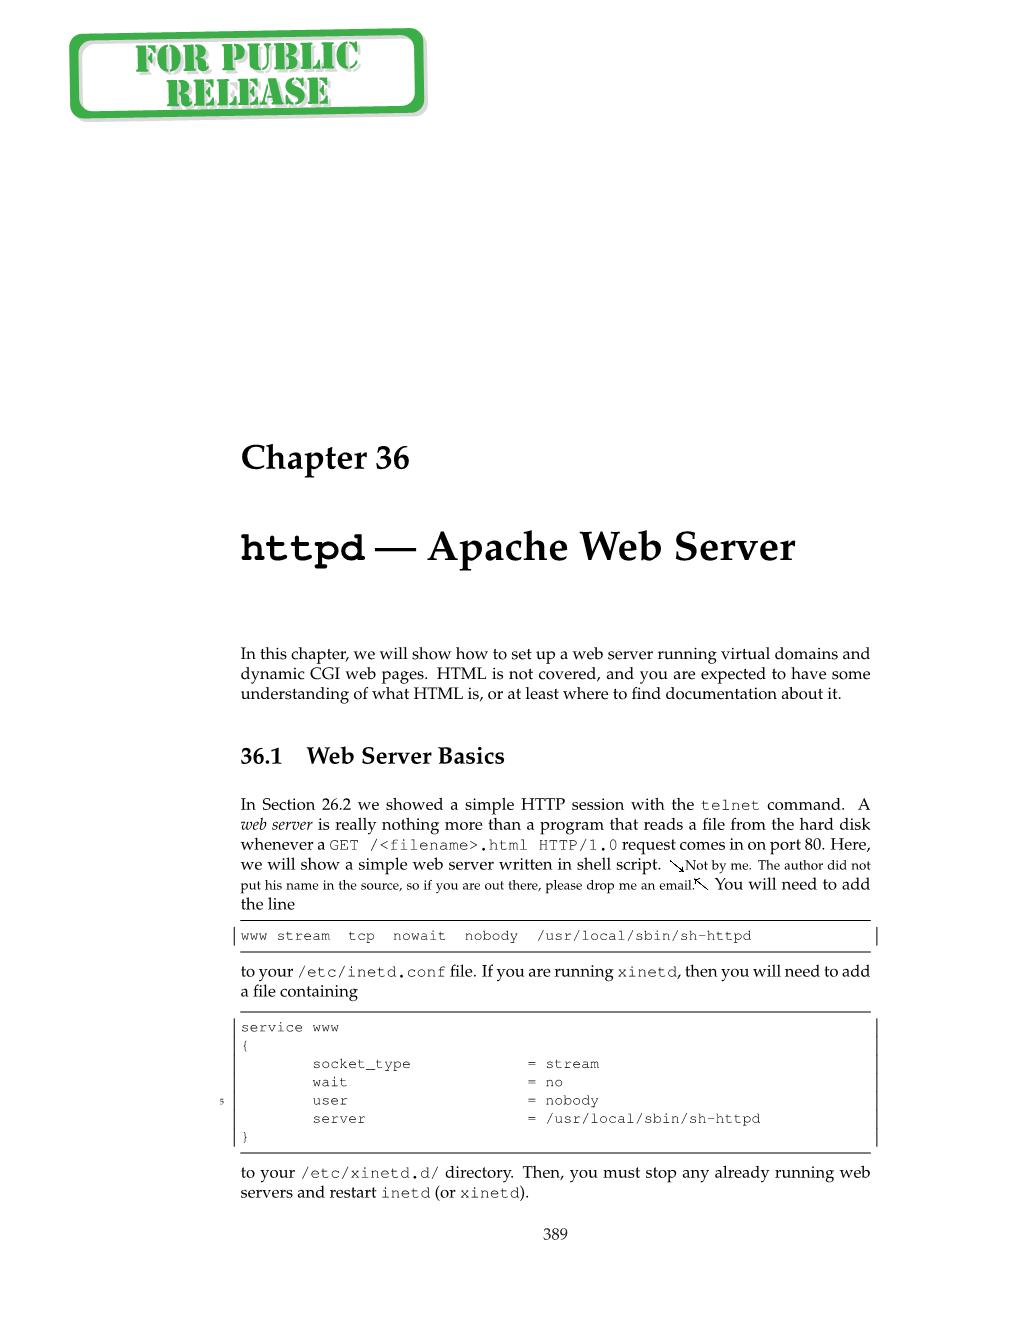 Httpd — Apache Web Server